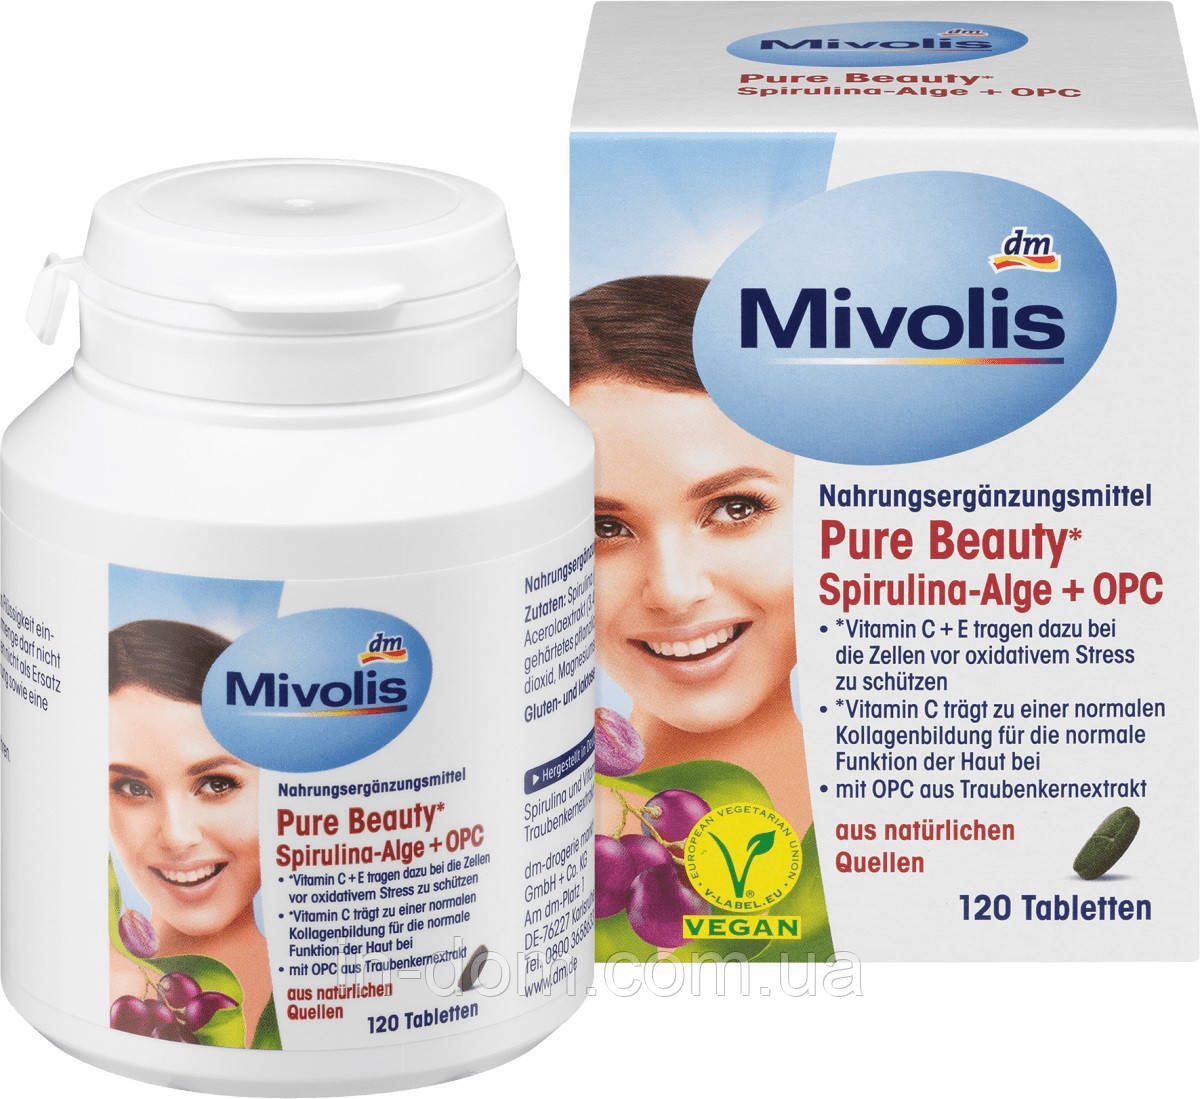 Mivolis Pure Beauty* Spirulina-Alge + OPC Таблетки для захисту клітин і нормальної функції шкіри, 120 шт